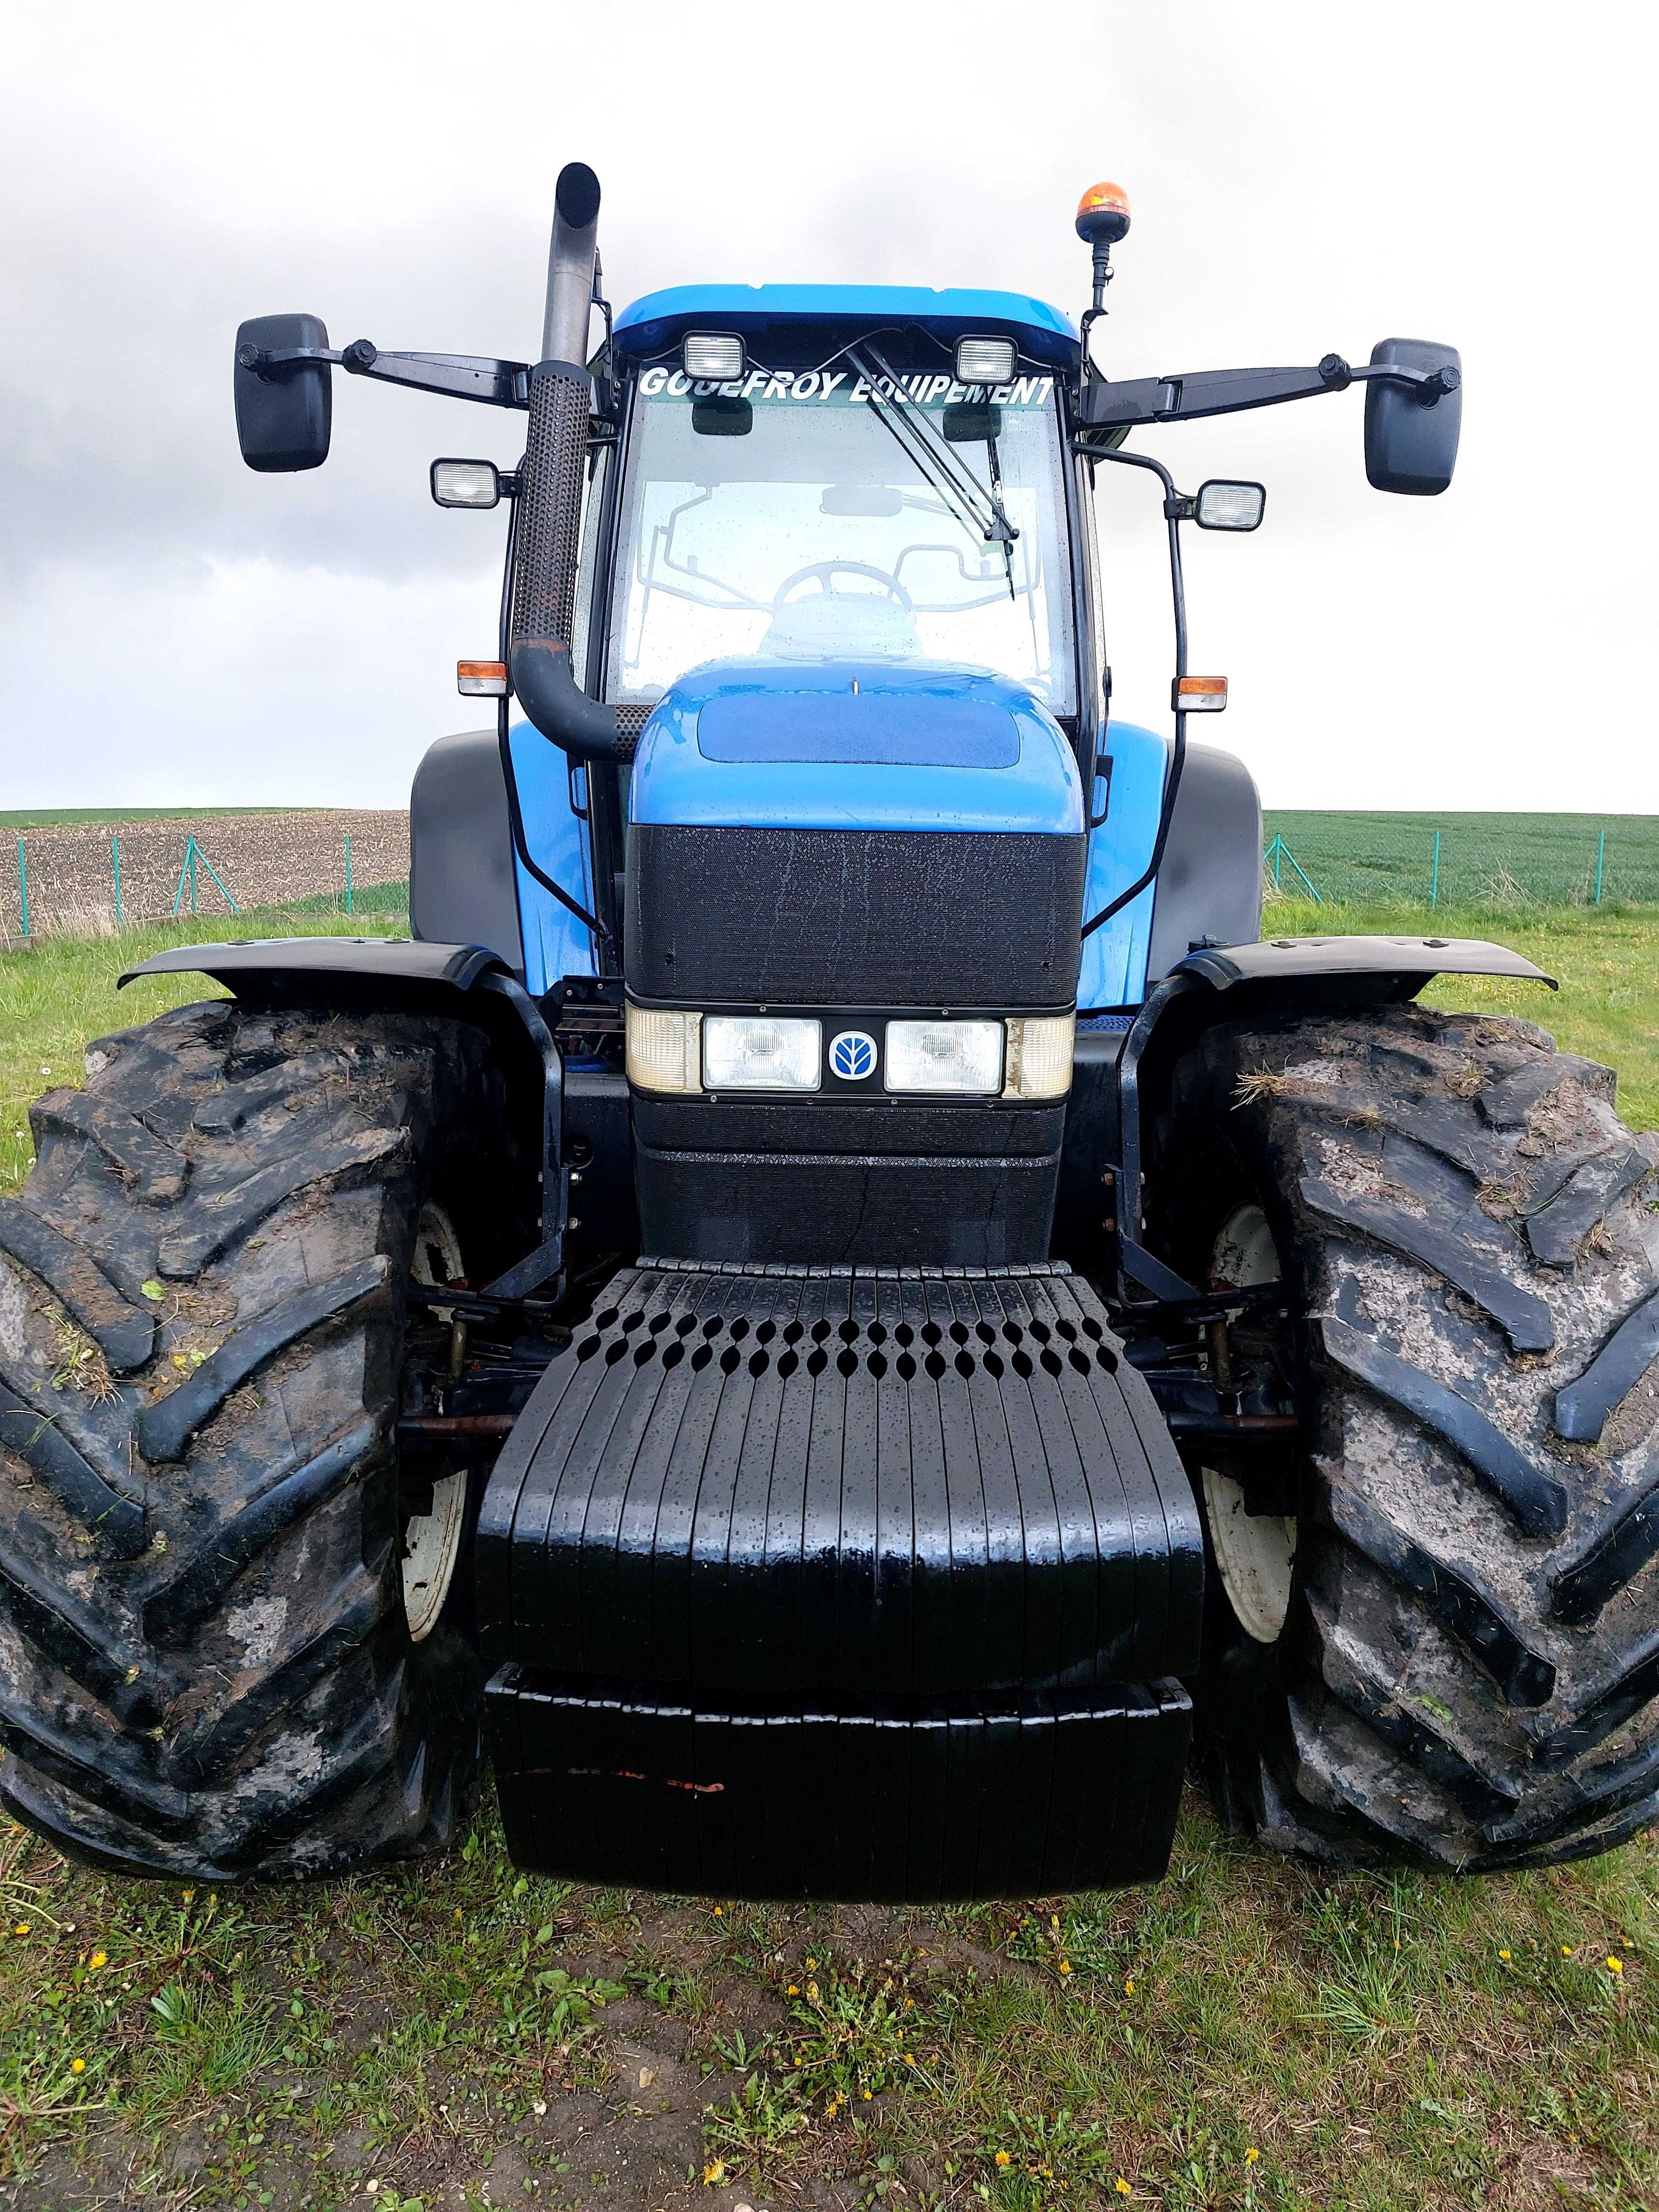 New Holland TM 175 Powercomand, duży ciężki solidny traktor!